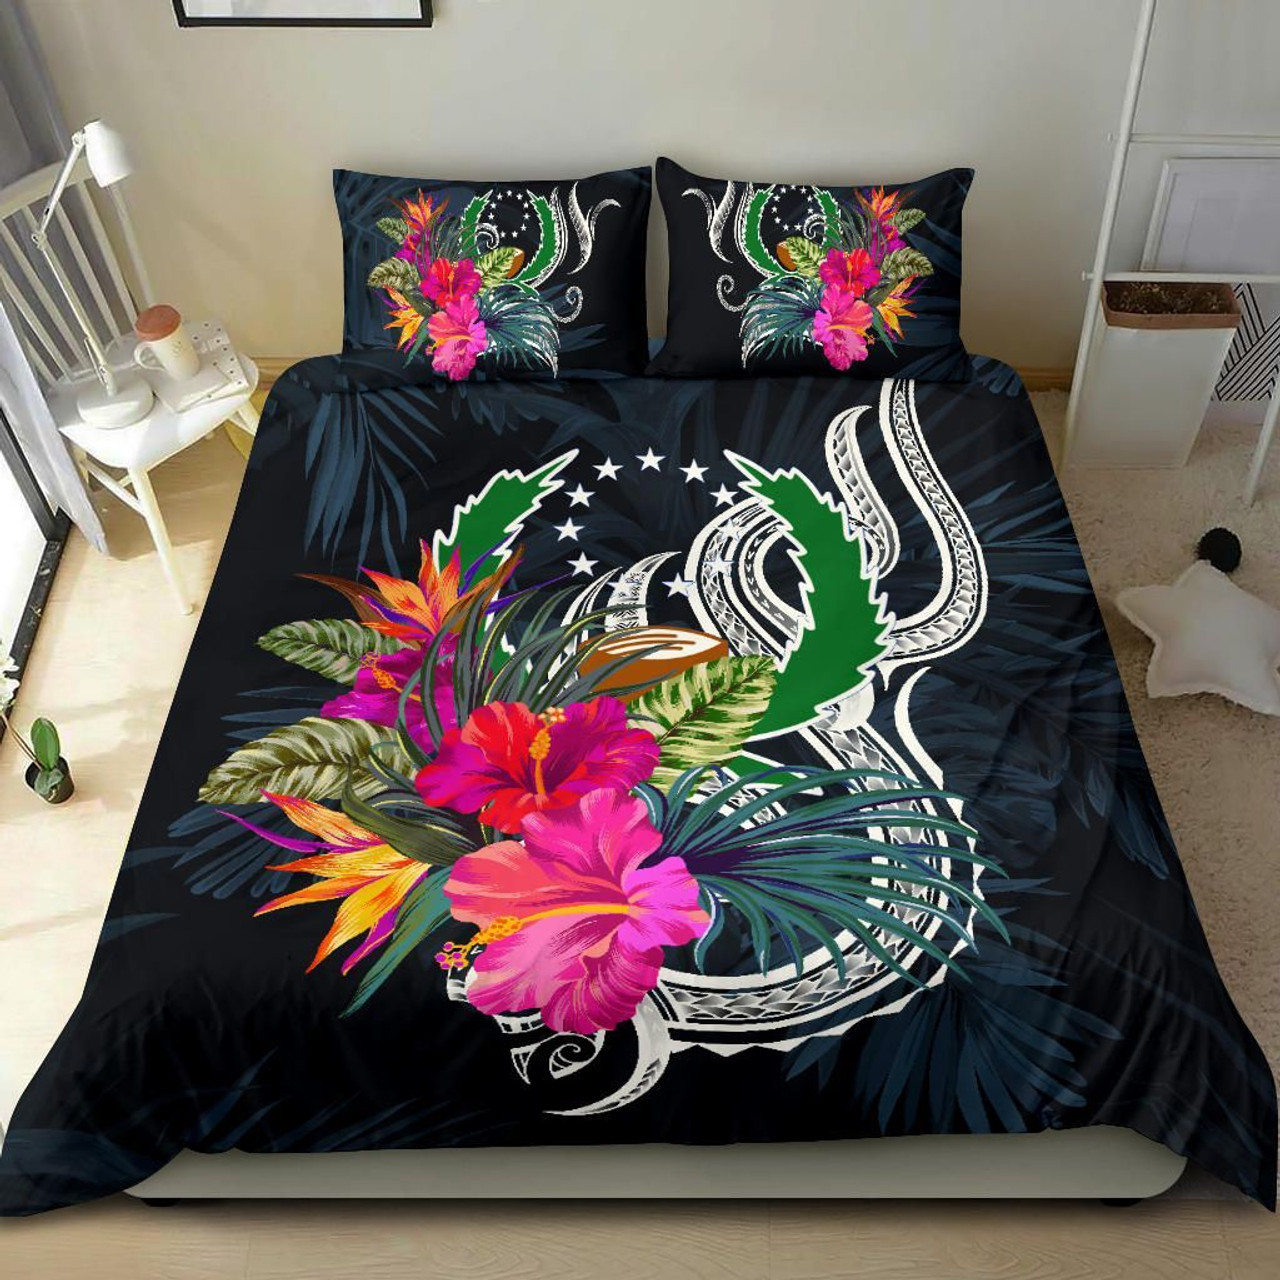 Polynesian Bedding Set - Pohnpei Duvet Cover Set Tropical Flowers 1